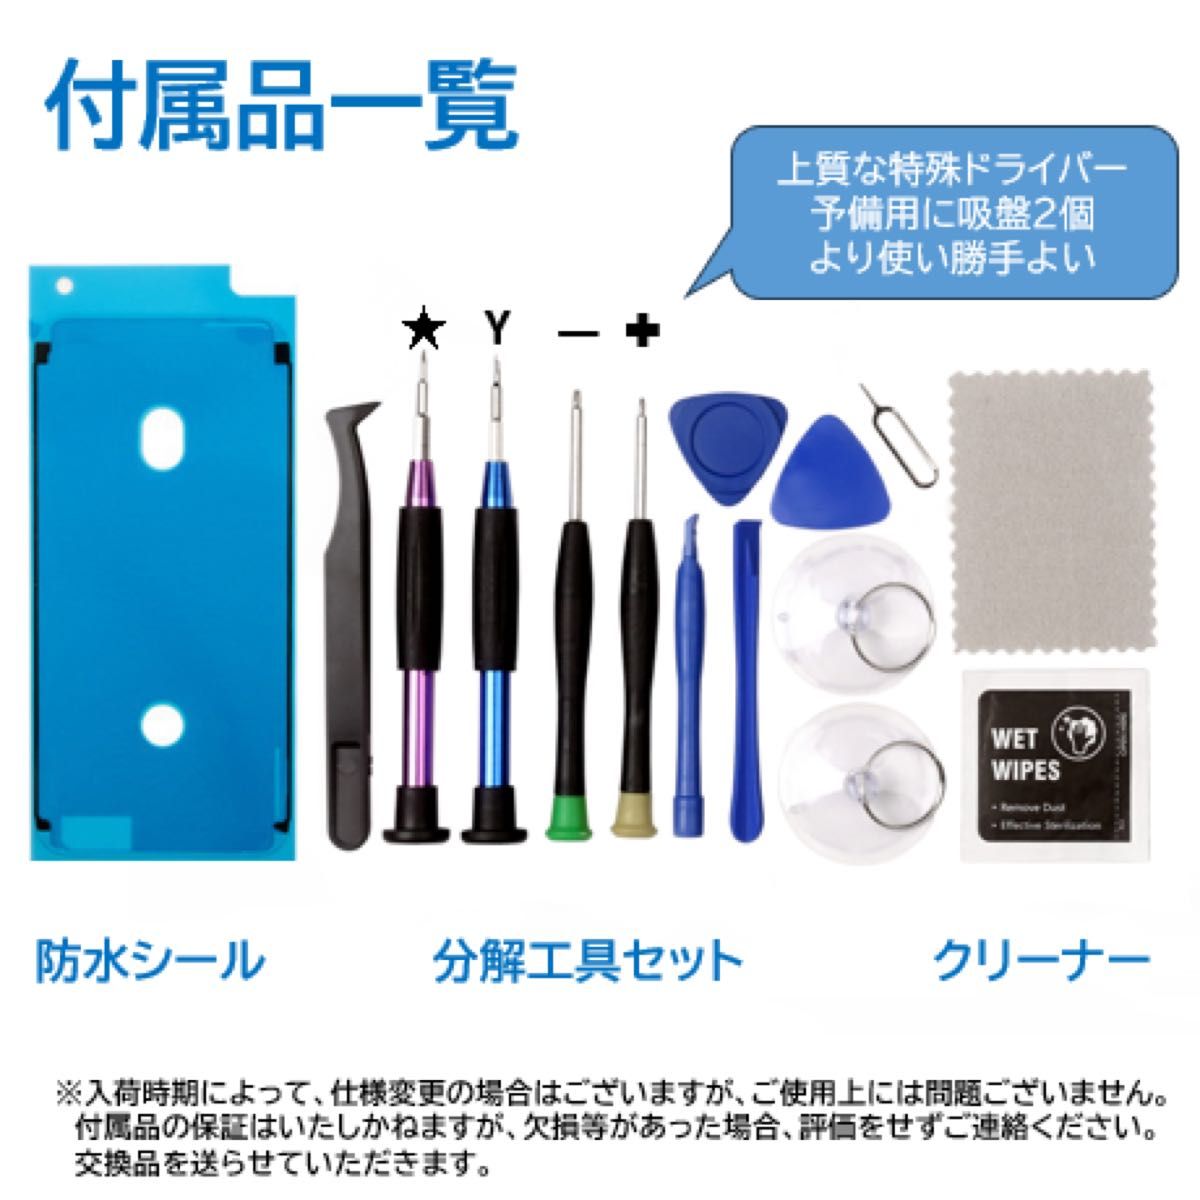 【新品】iPhone6S白 液晶フロントパネル 画面修理交換用 工具付